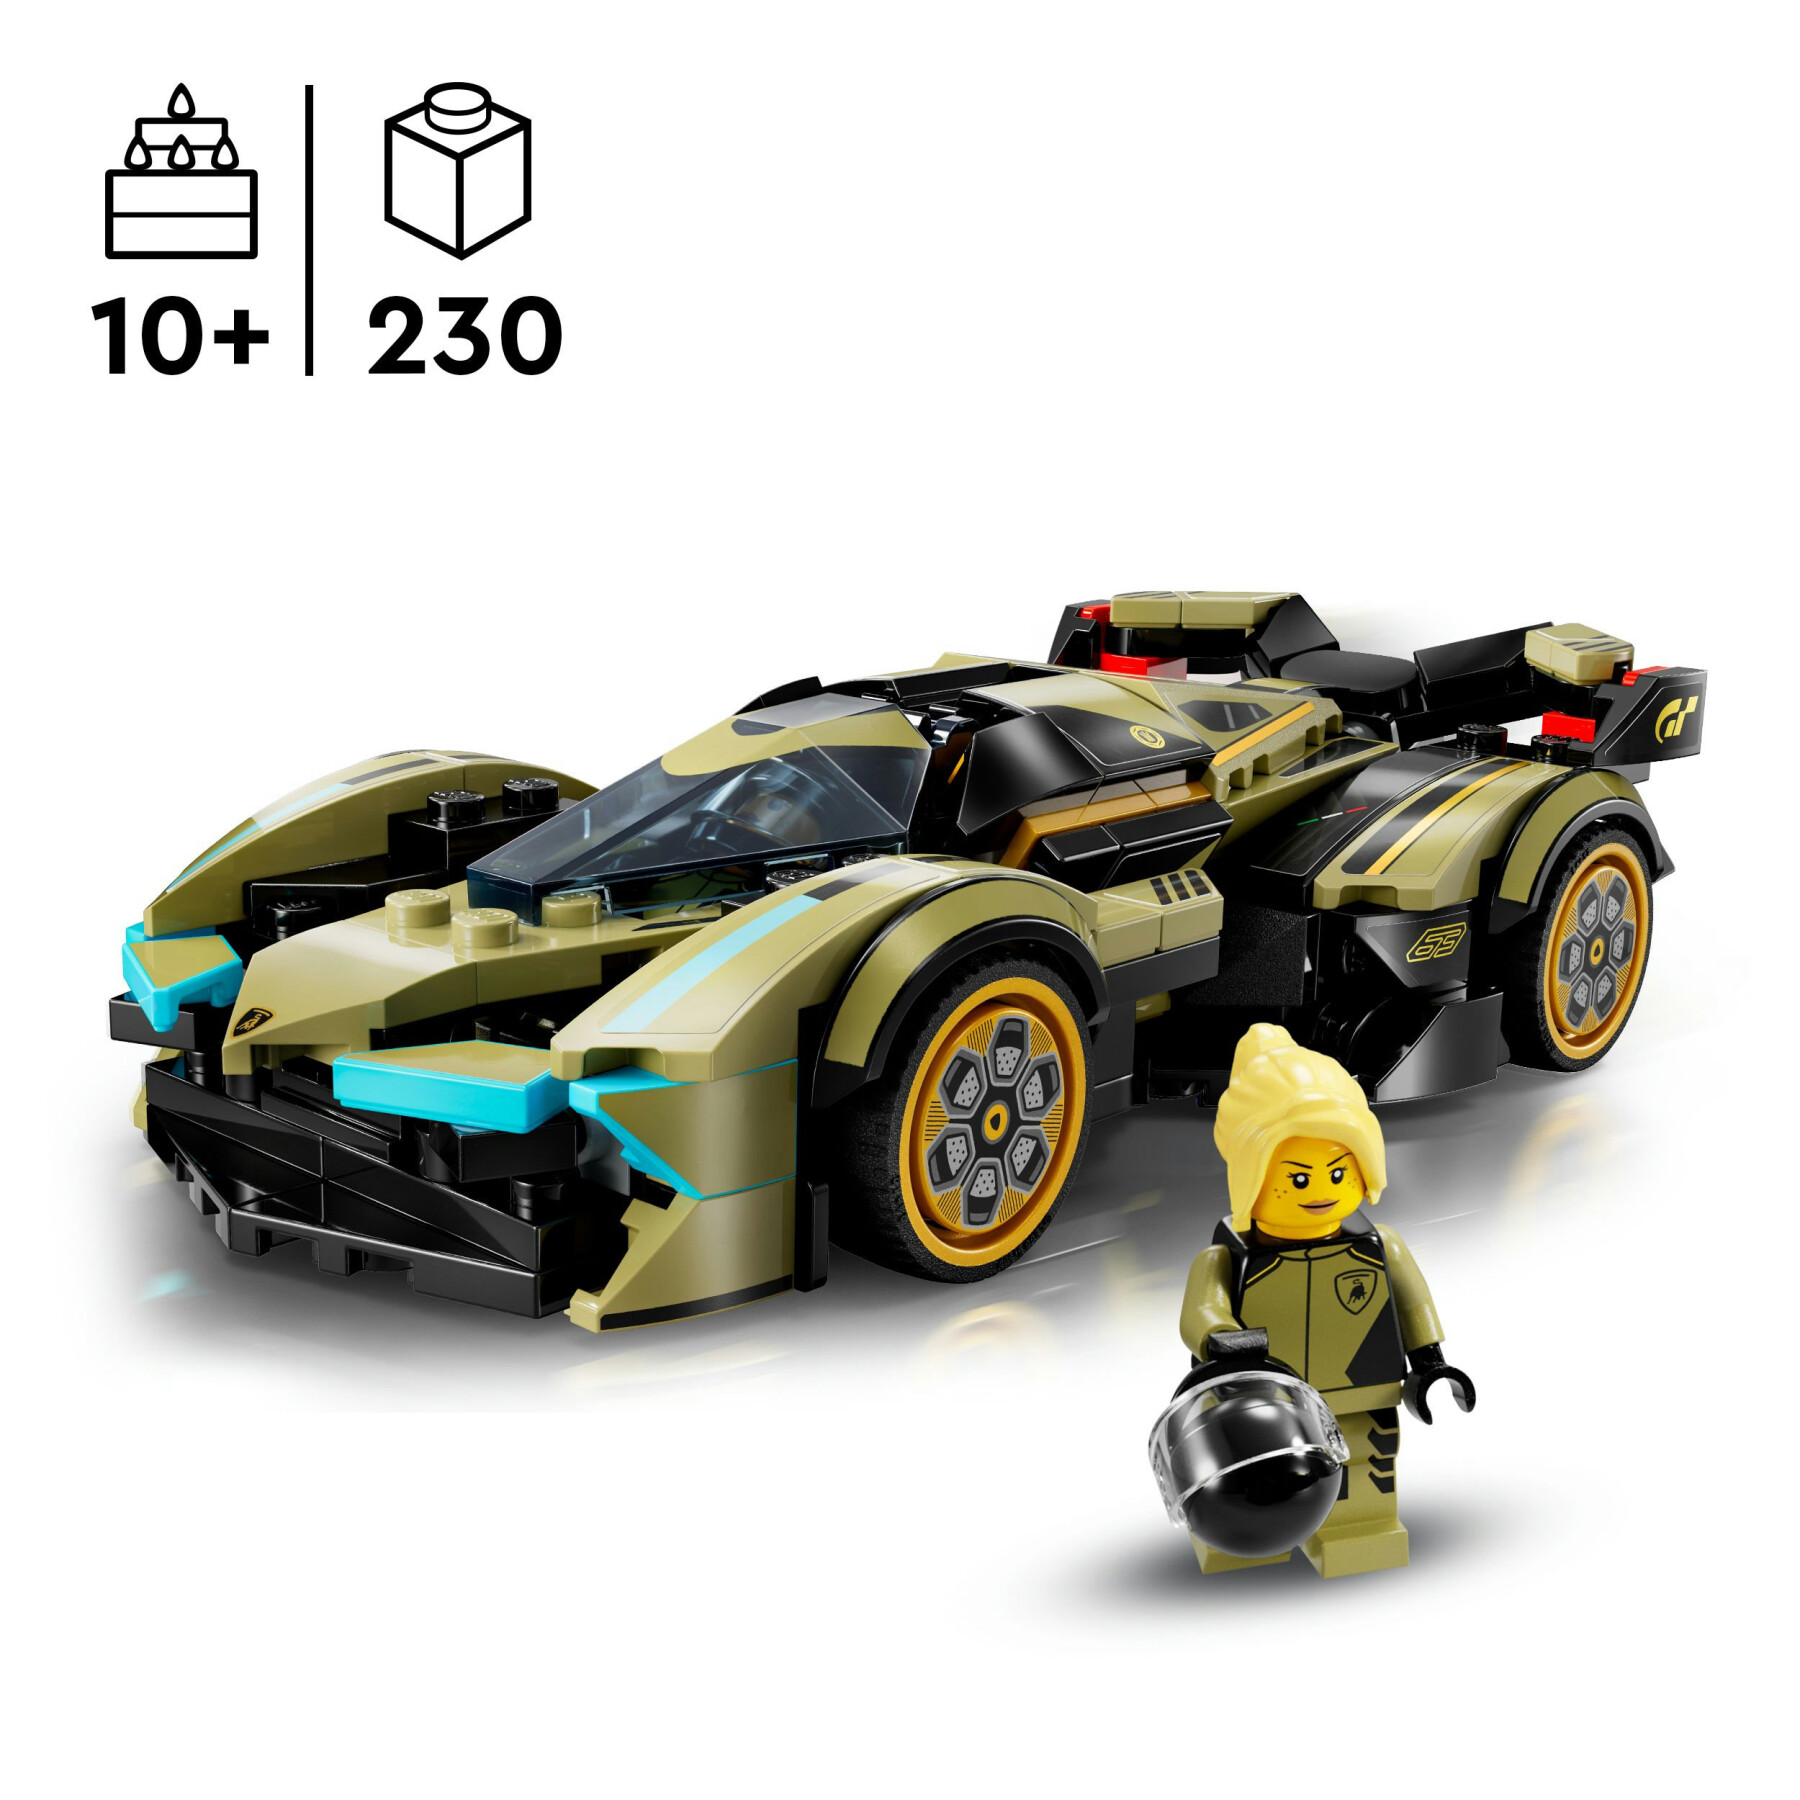 Lego speed champions 76923 super car lamborghini lambo v12 vision gt, macchina giocattolo da collezione per bambini 10+ anni - LEGO SPEED CHAMPIONS